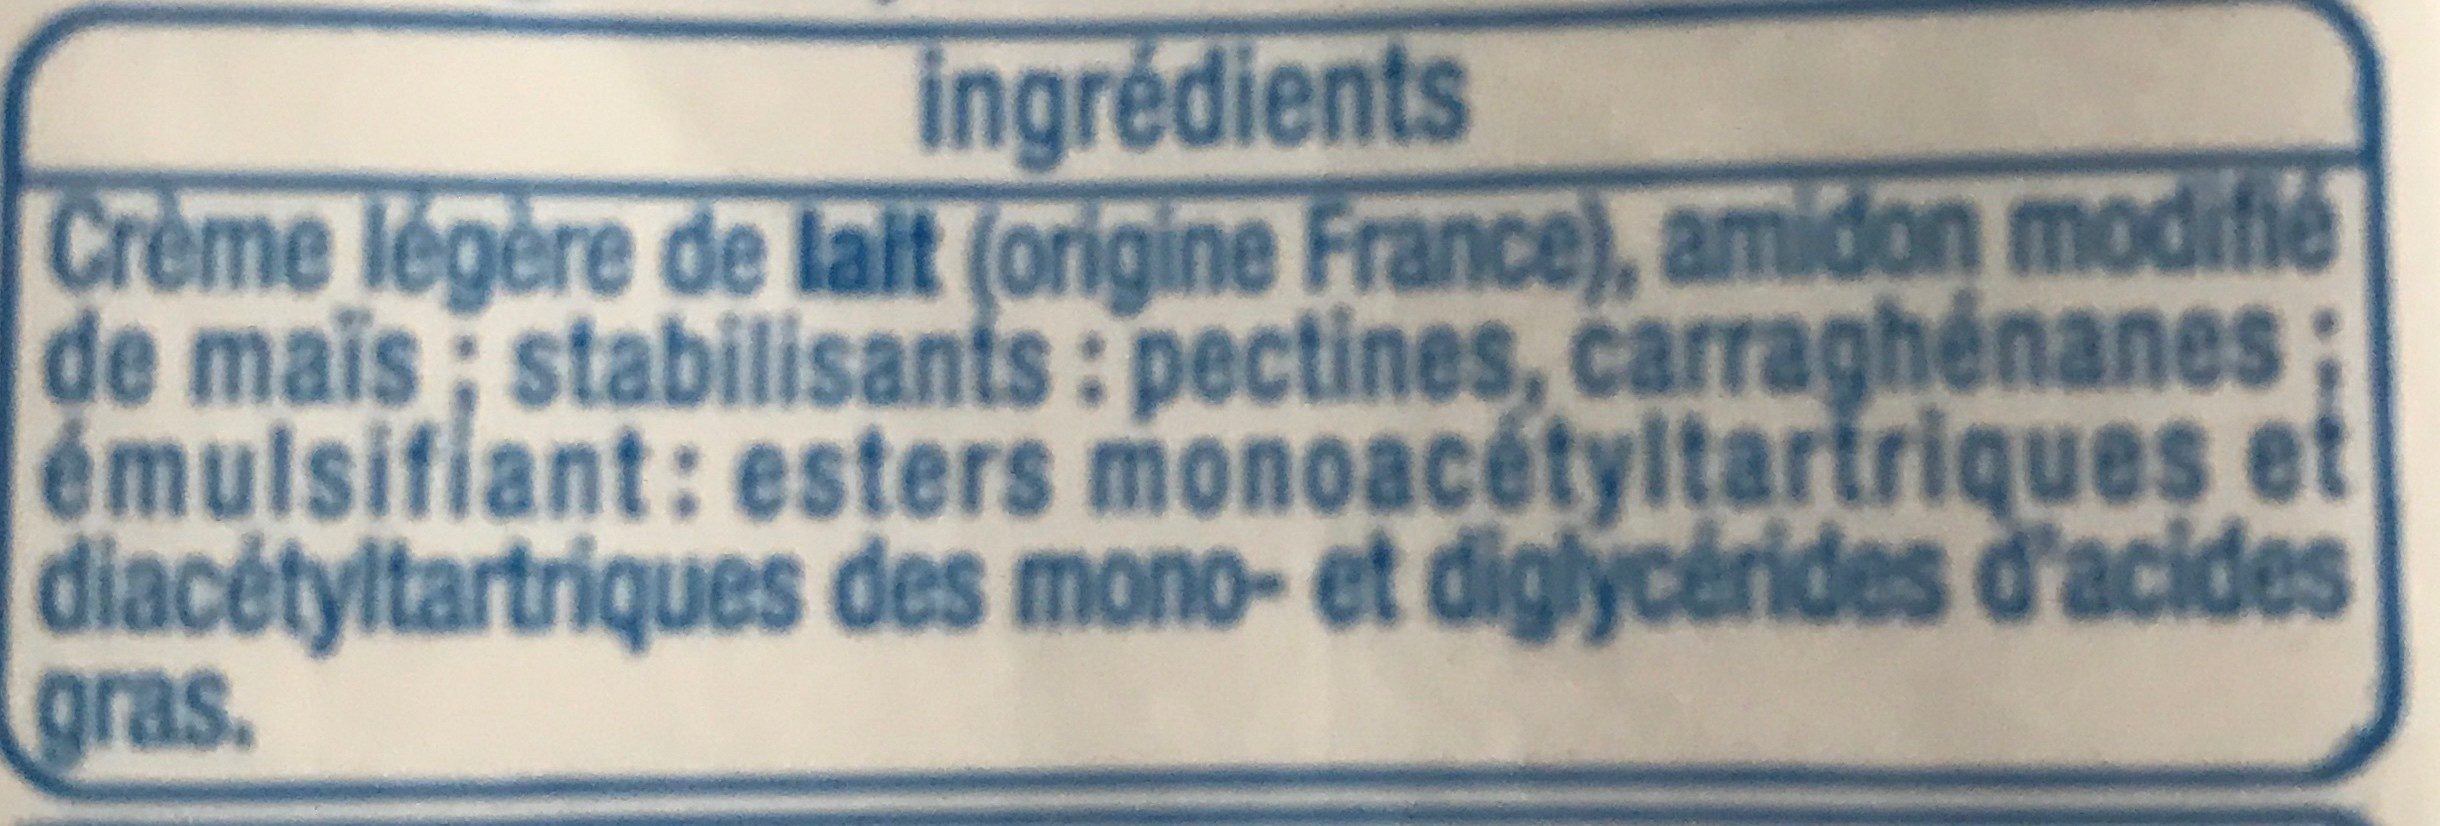 Creme semi epaisse - Ingredients - fr